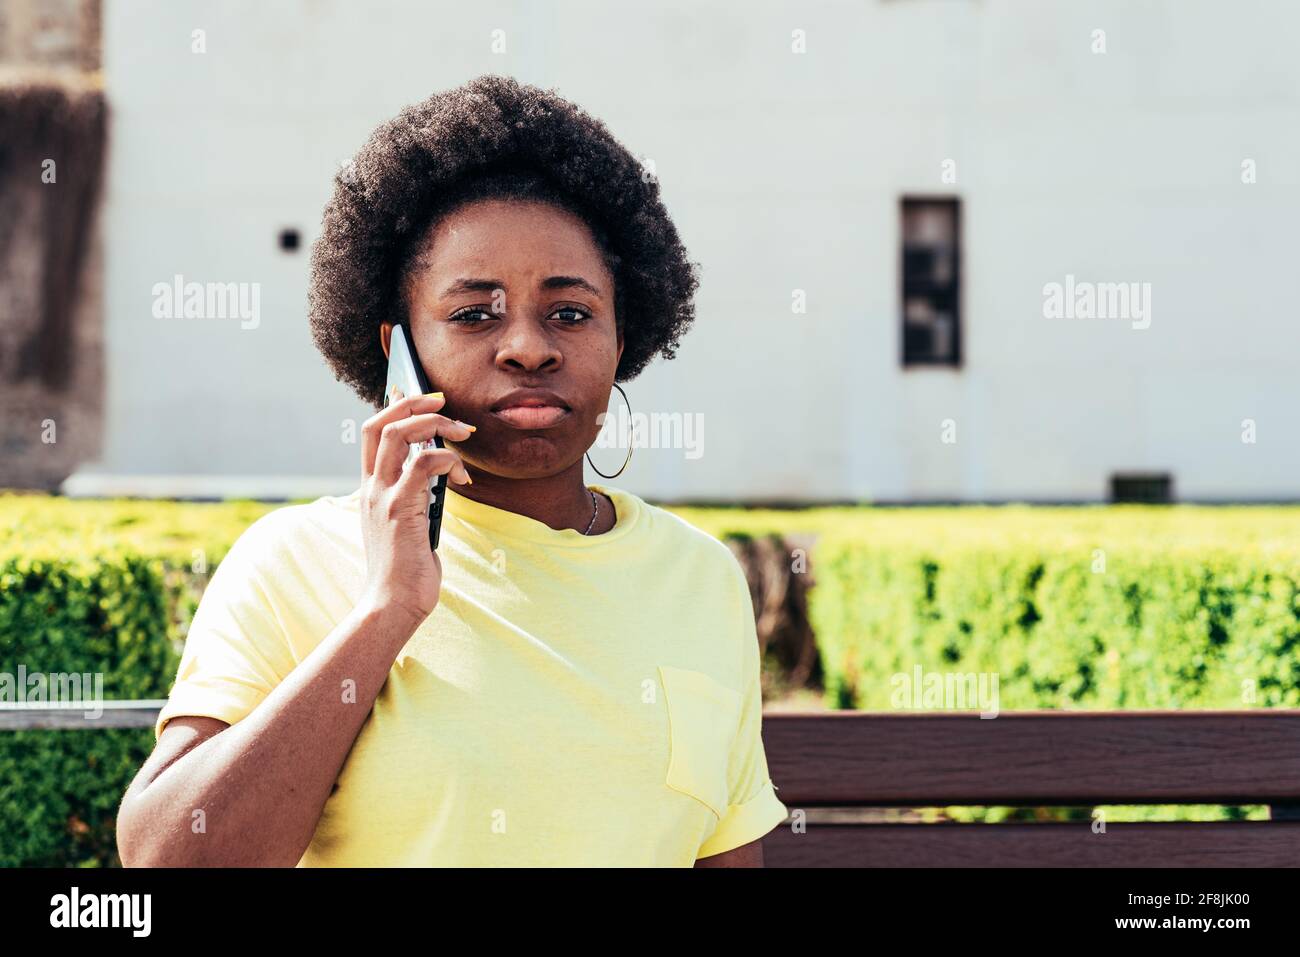 Ritratto di ragazza nera con capelli afro e orecchini a cerchio che fanno una chiamata in uno spazio urbano della città. Foto Stock